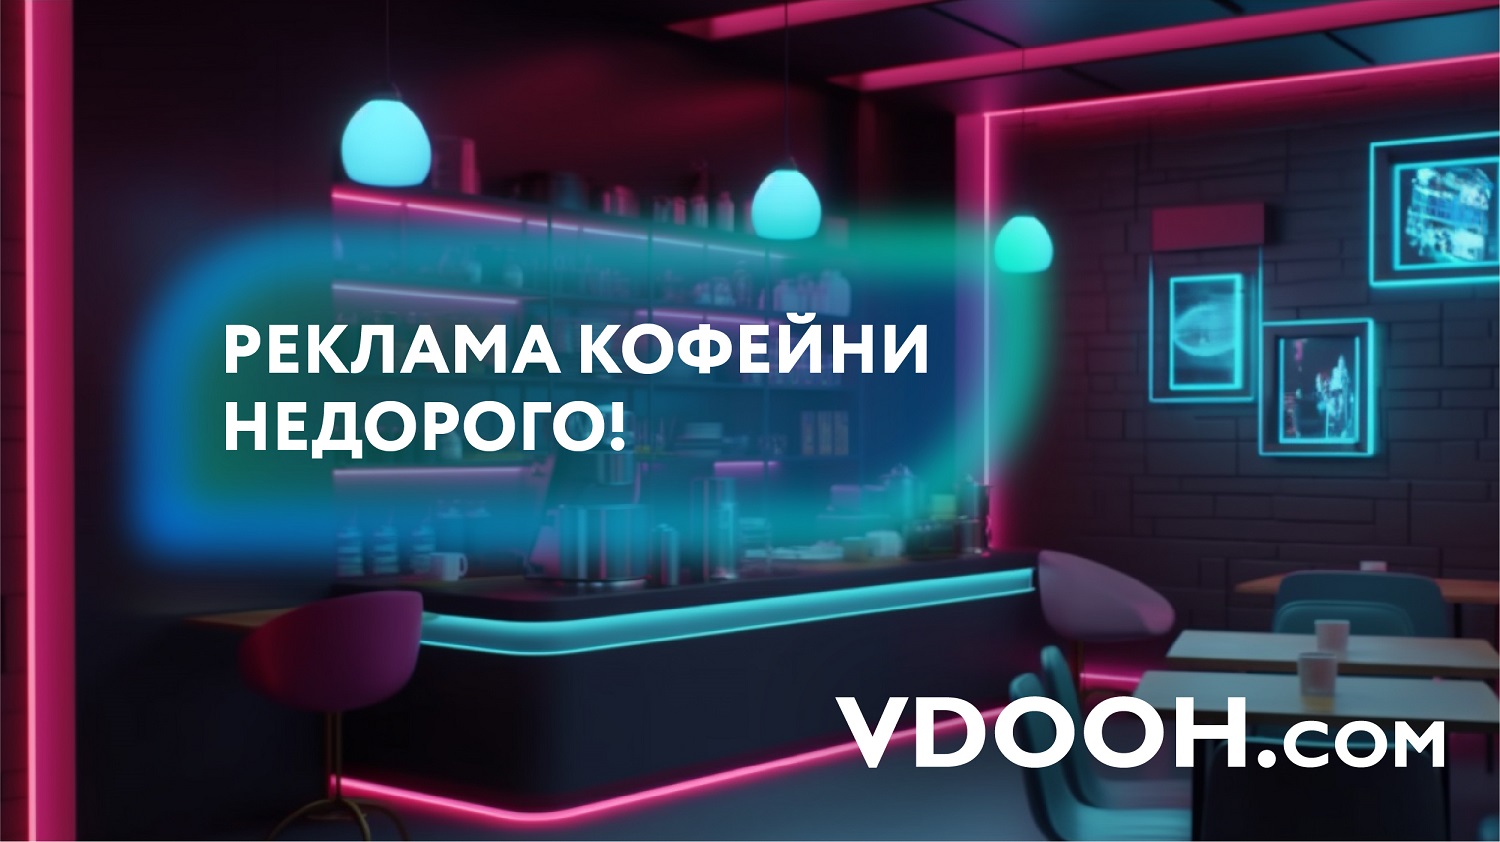 Маркетплейс VDOOH: расскажем всему Нижнему Новгороду о вашем бизнесе